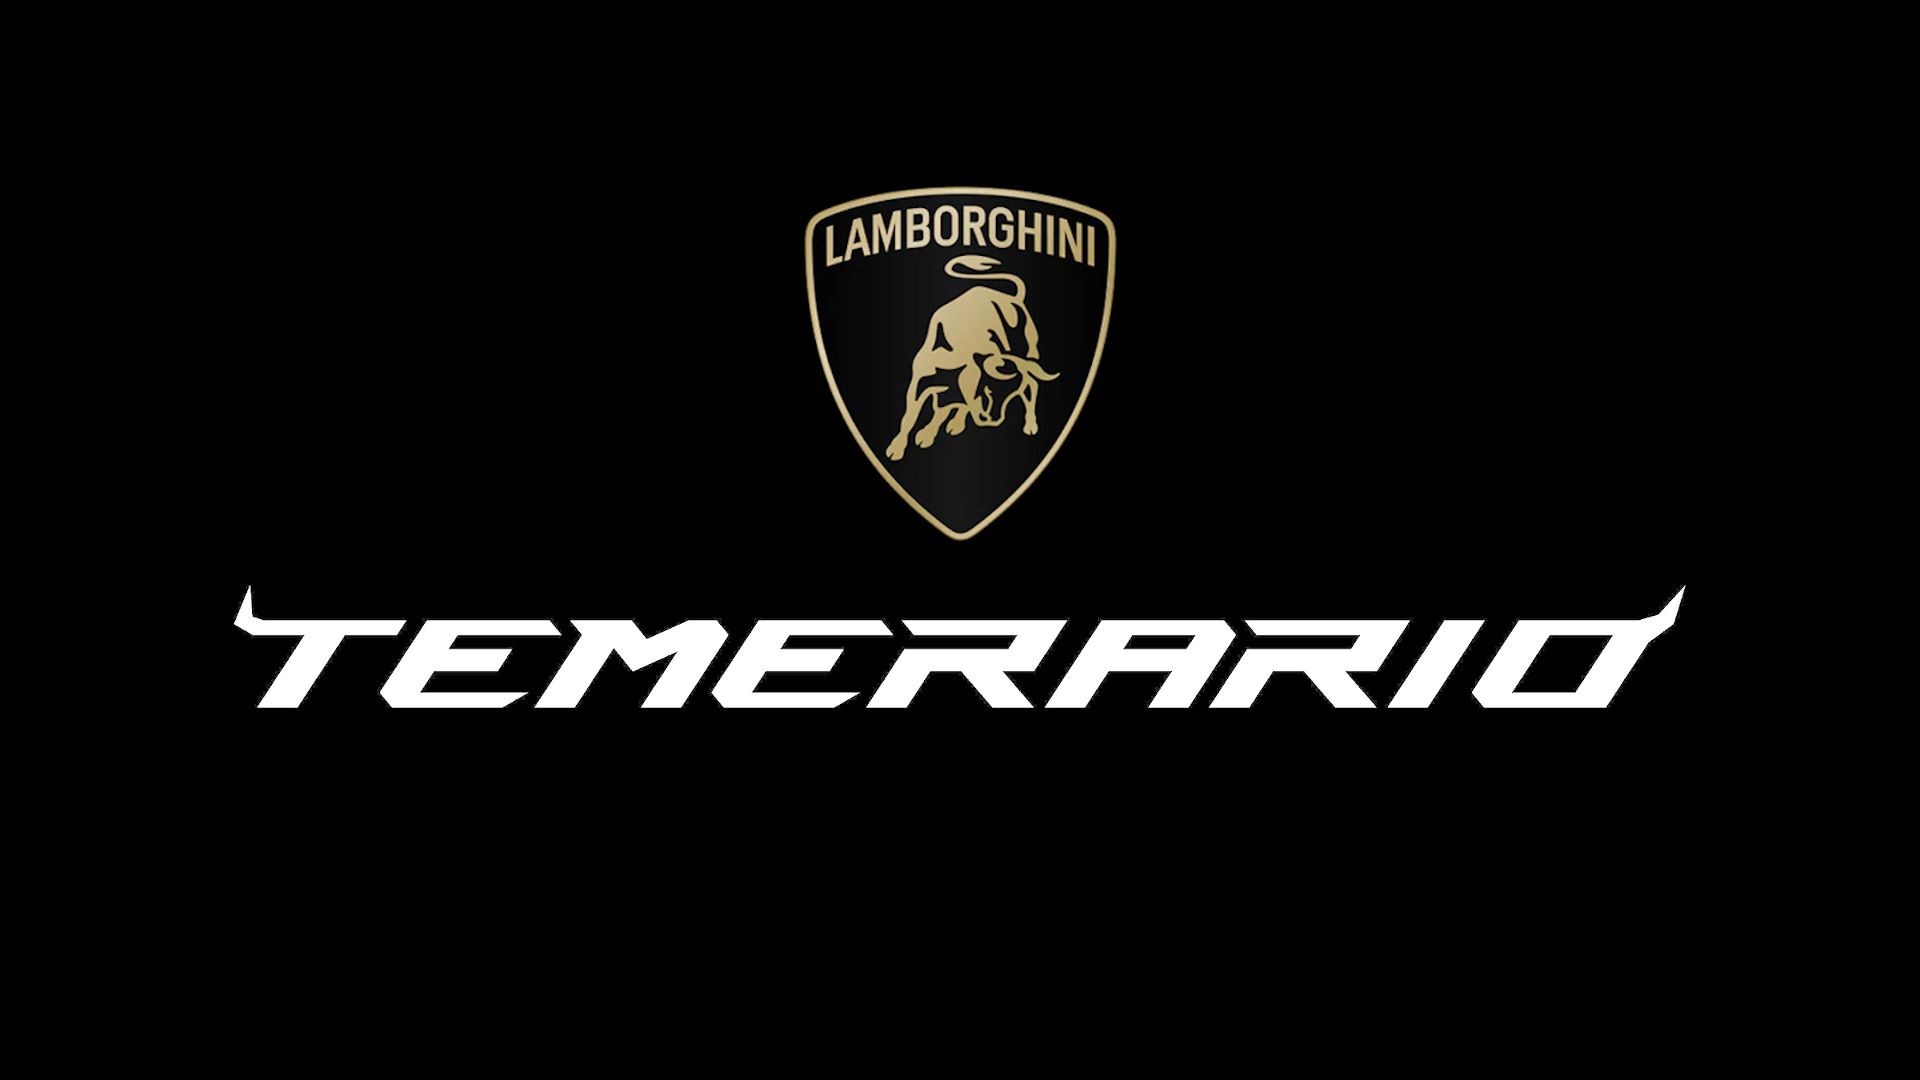 Lamborghini Temerario Logo alongside new Lamborghini shield